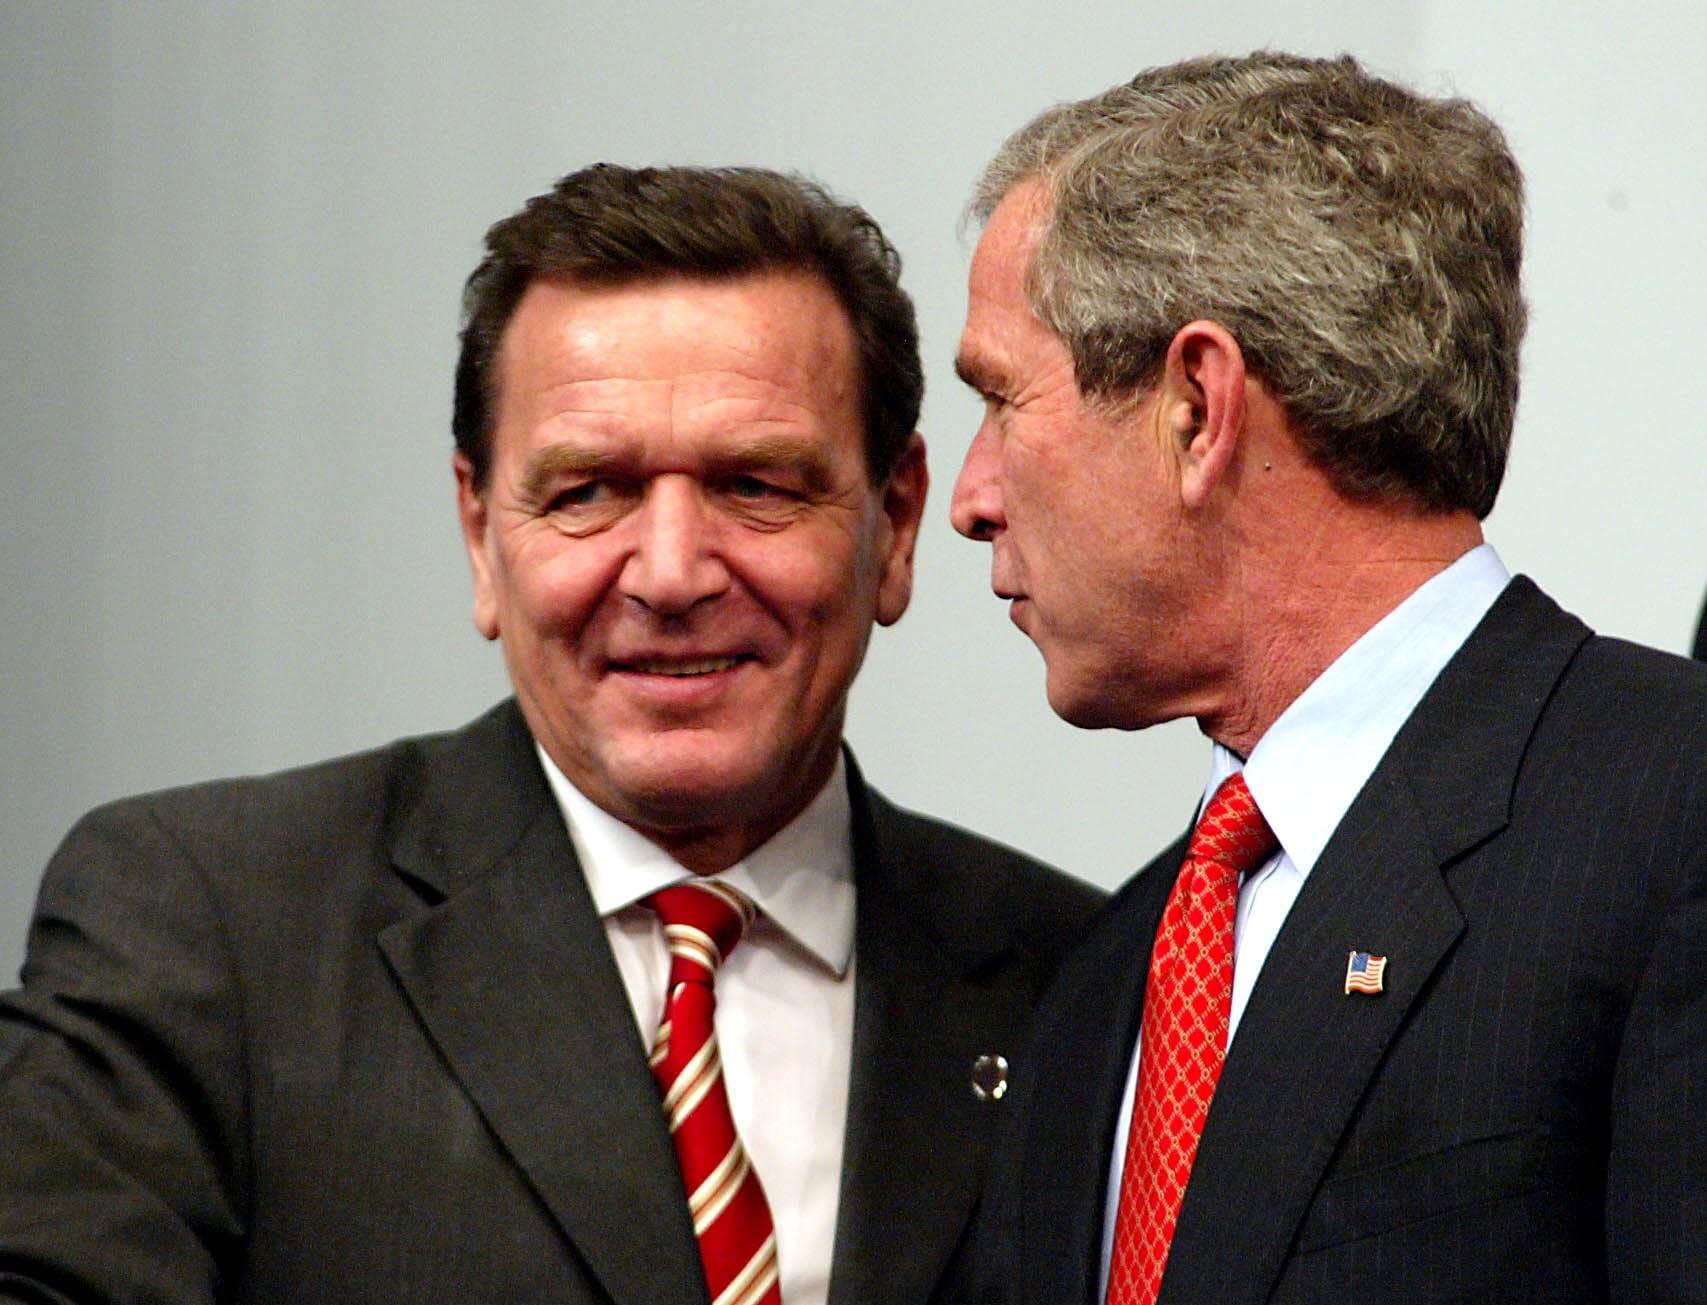 November 2002: Beim Nato-Gipfel in Prag spricht Schröder mit dem damaligen US-Präsidenten George W. Bush. Während der Irakkrise verkündet der damalige Bundeskanzler, dass Deutschland ohne UN-Mandat nicht am Irakkrieg teilnehmen werde.